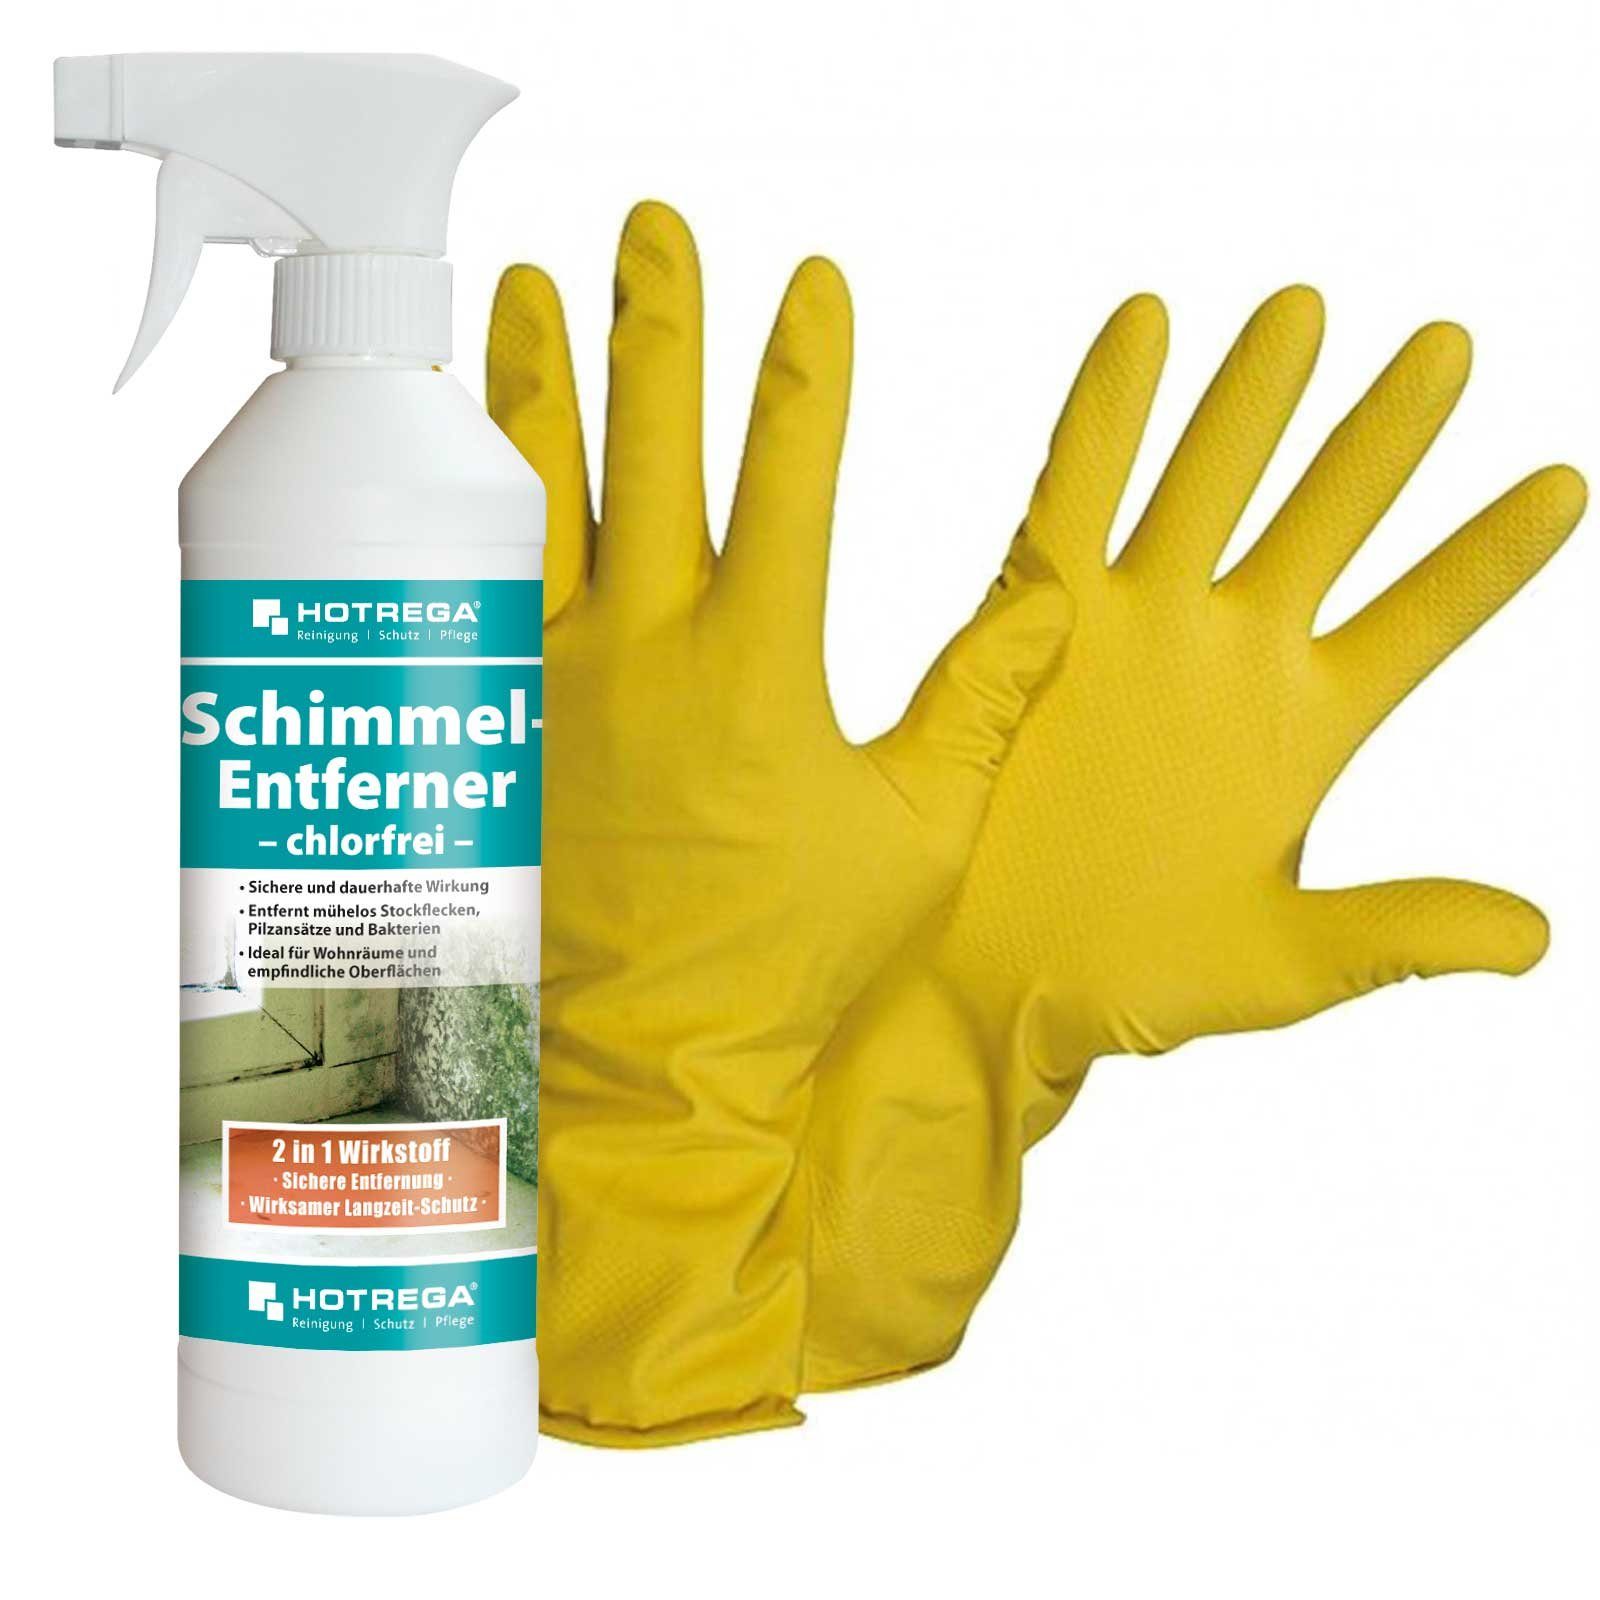 Schimmel Handschuhe + HOTREGA® 10 Schimmelentferner Gr. chlorfrei ml SET NITRAS Entferner 500